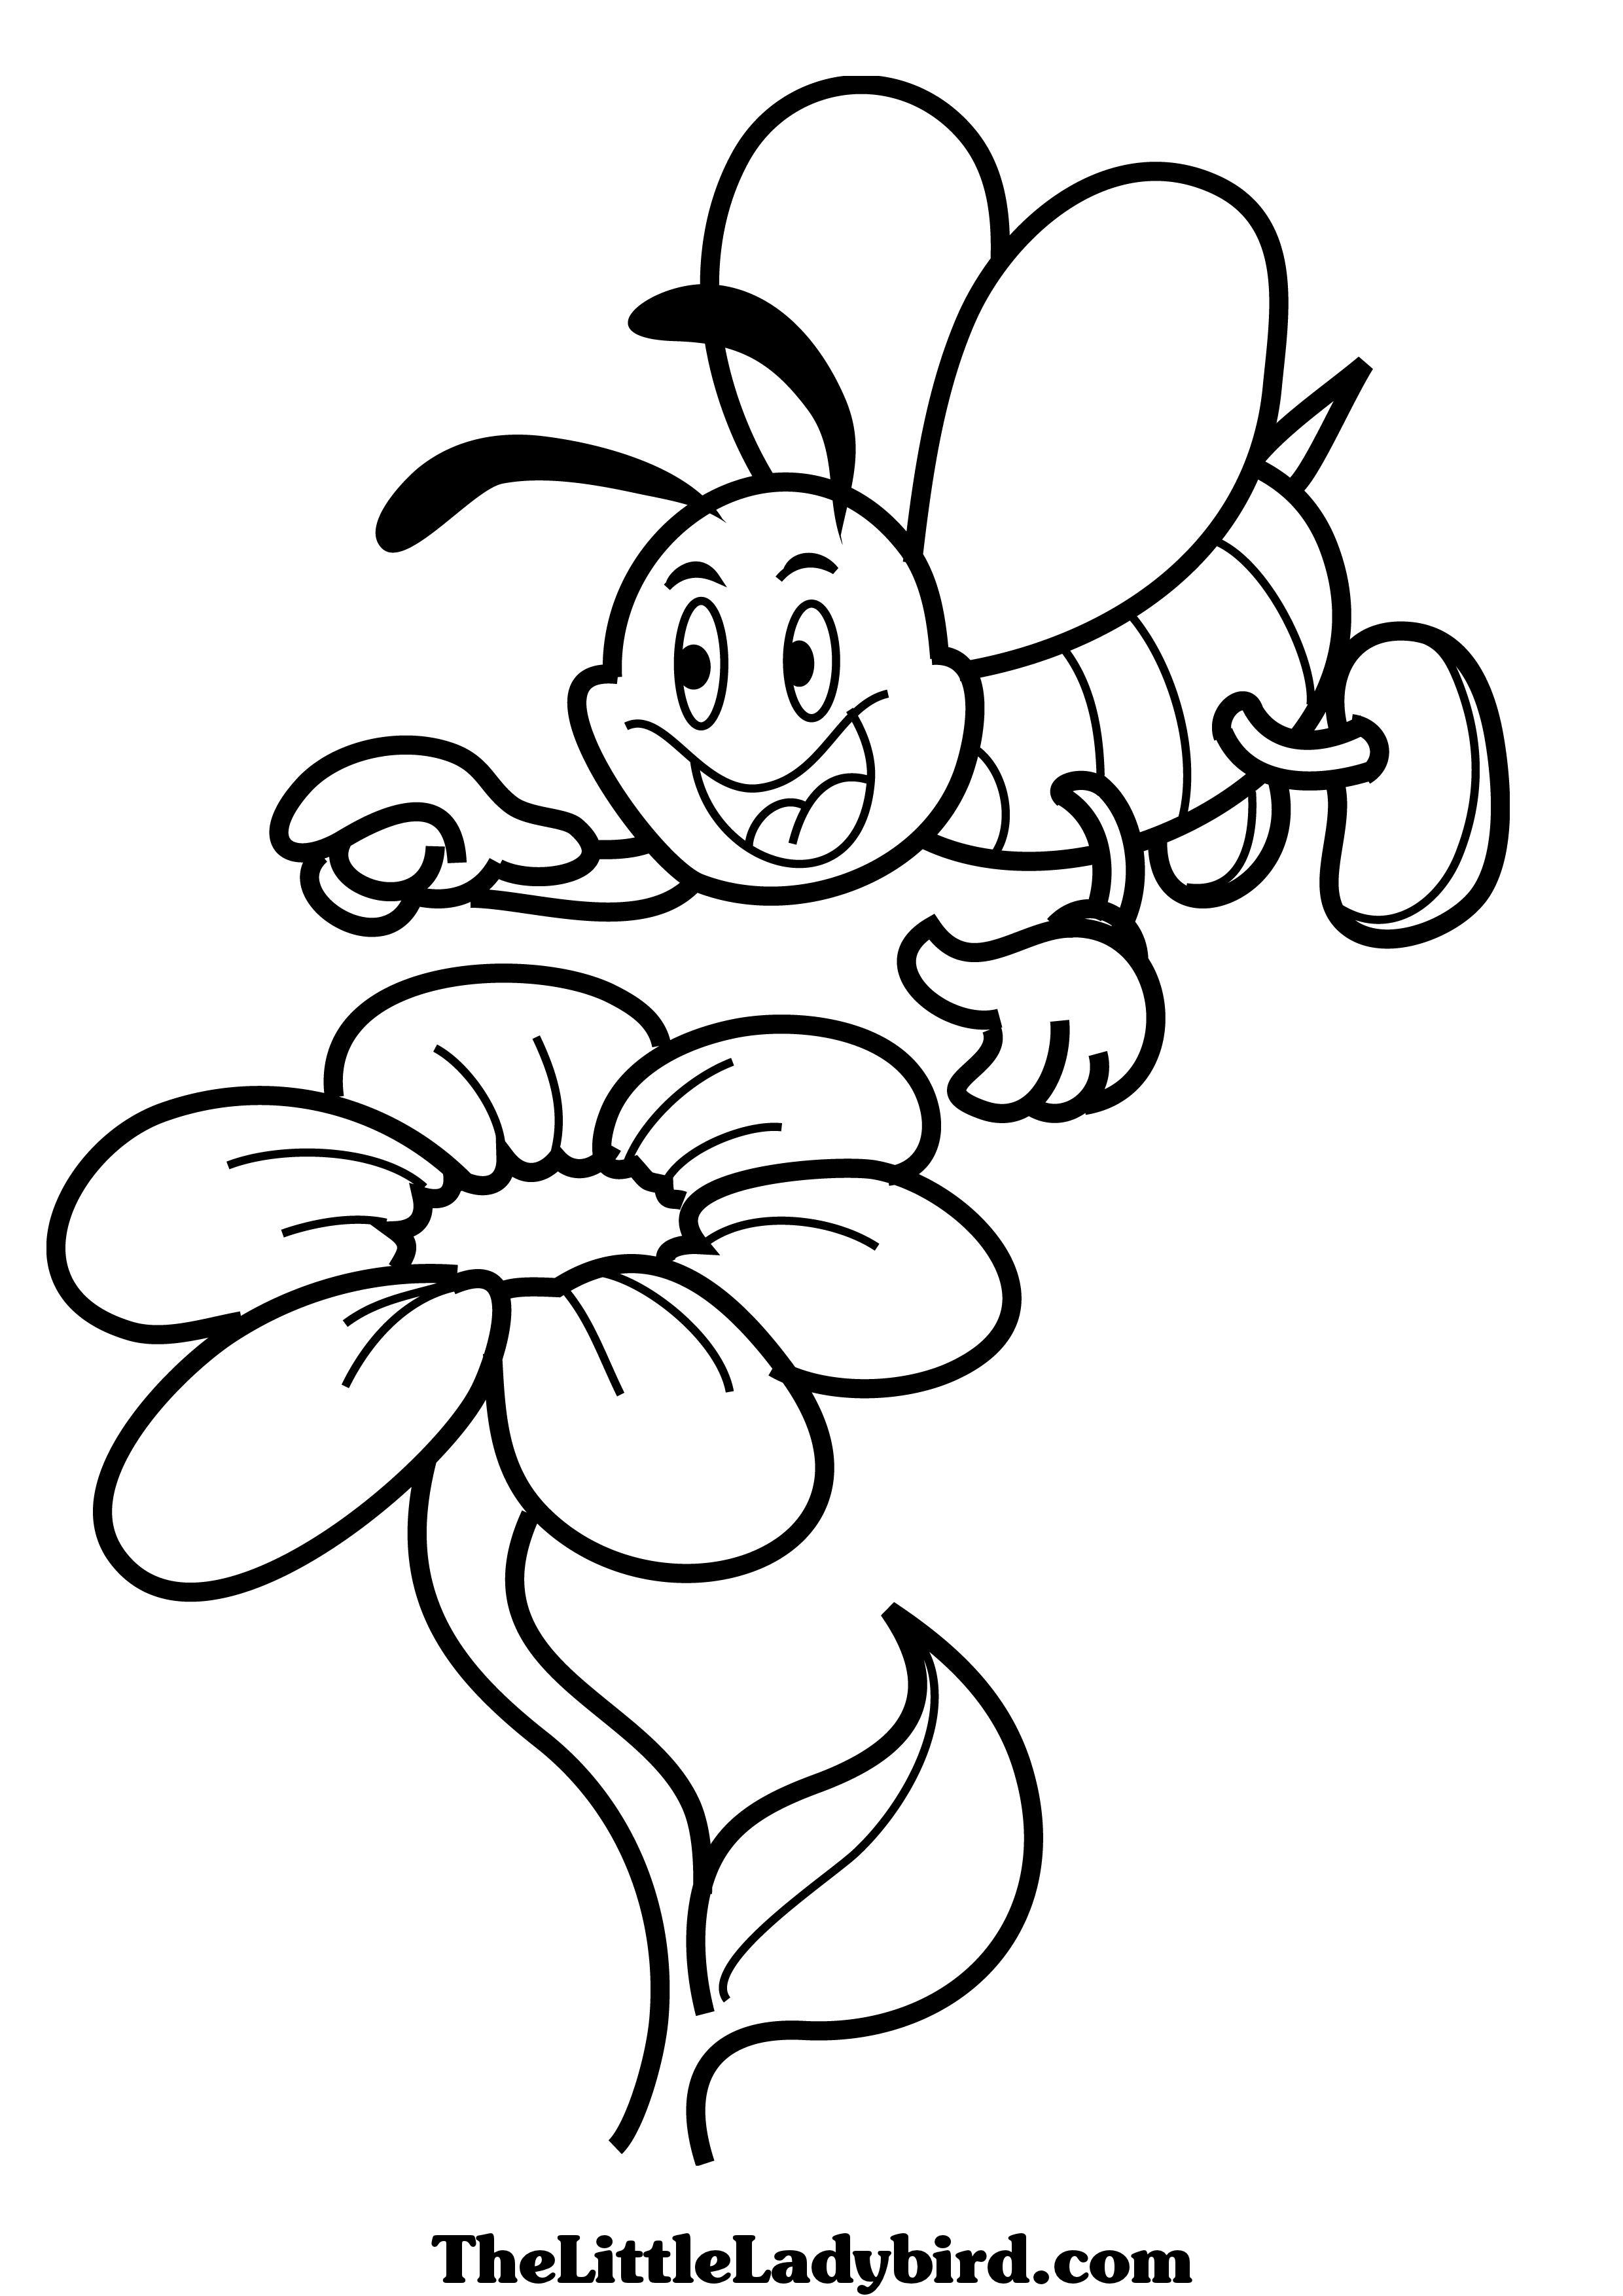 dessin à colorier de a abeille hovering over flower dessins à colorier the